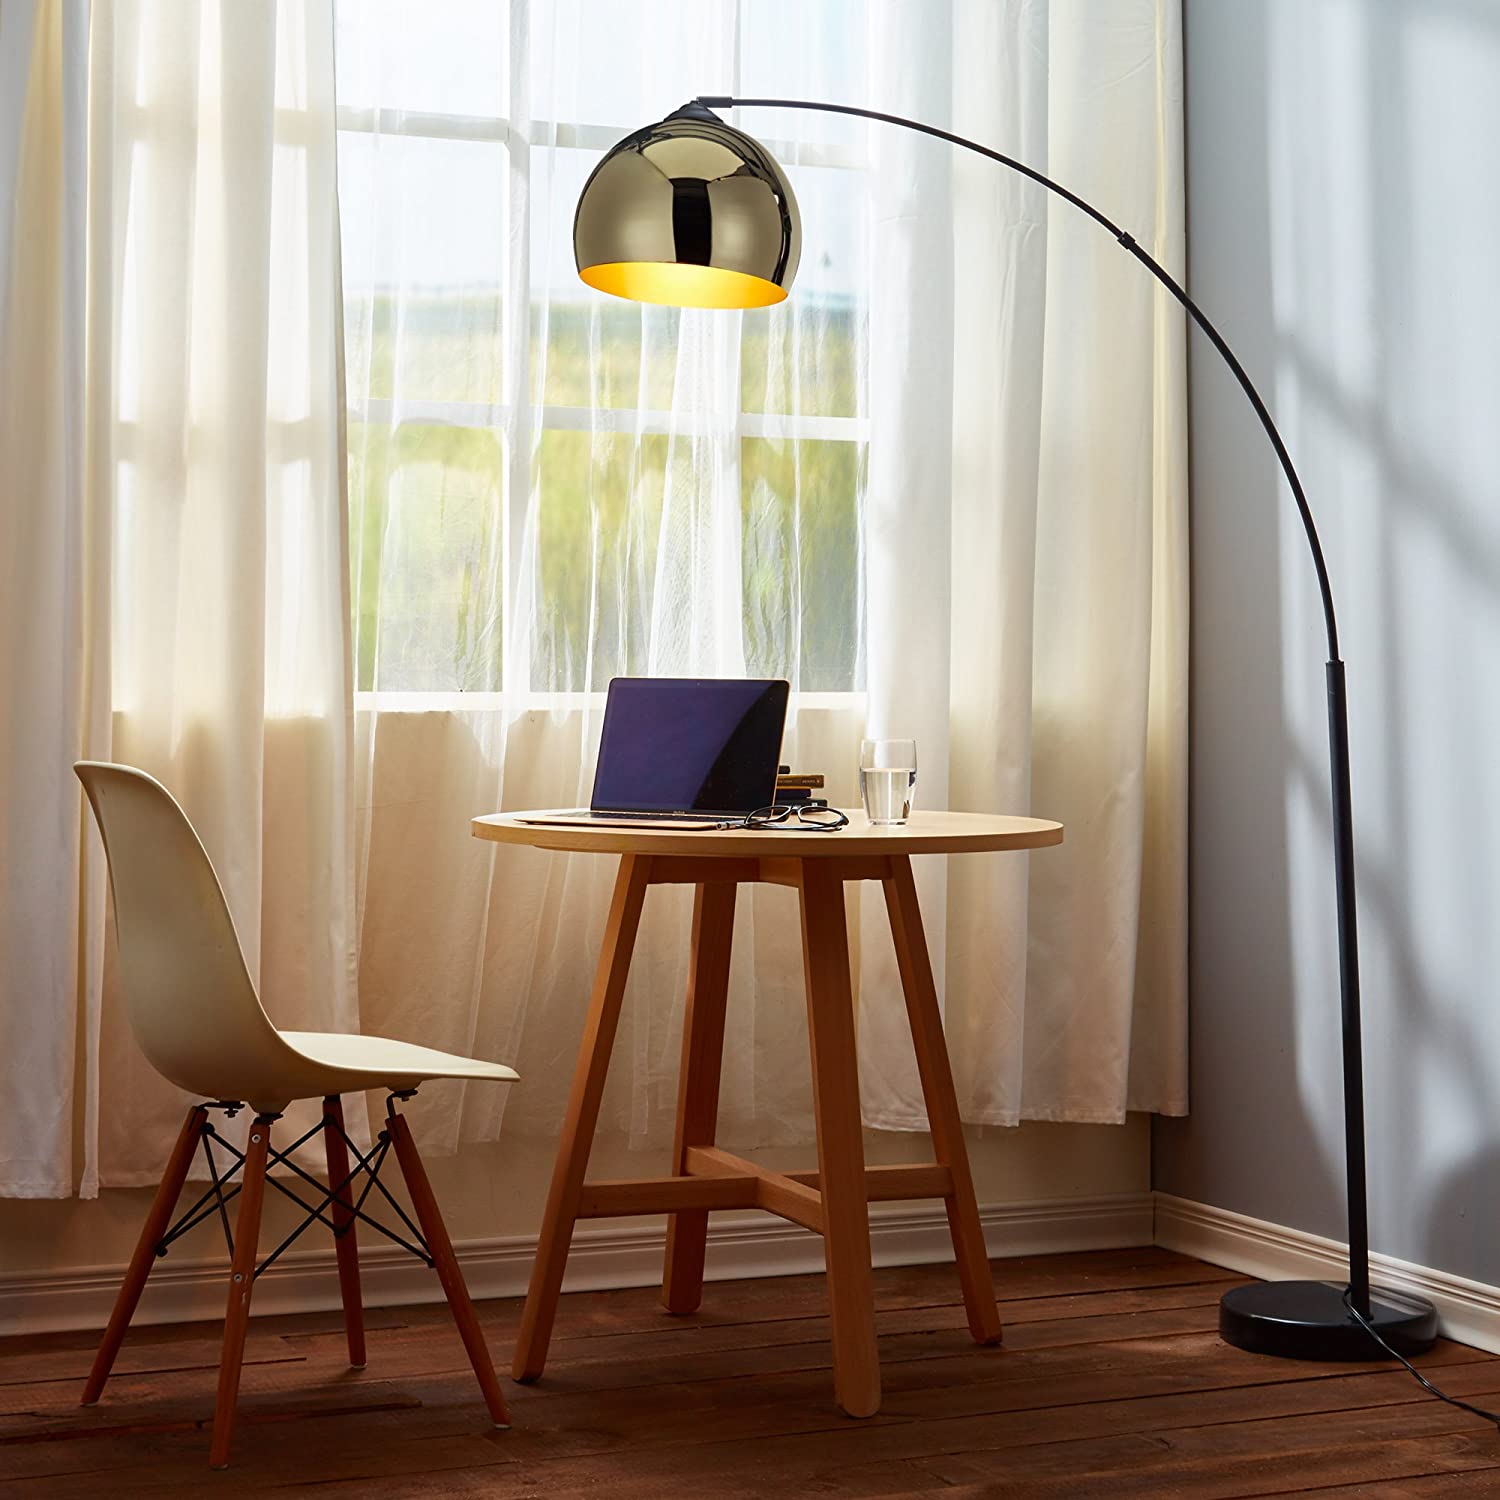 Versanora VN L00012 Arquer Arc Floor Lamp 4 Lamps Buy - Best Online Lighting Stores